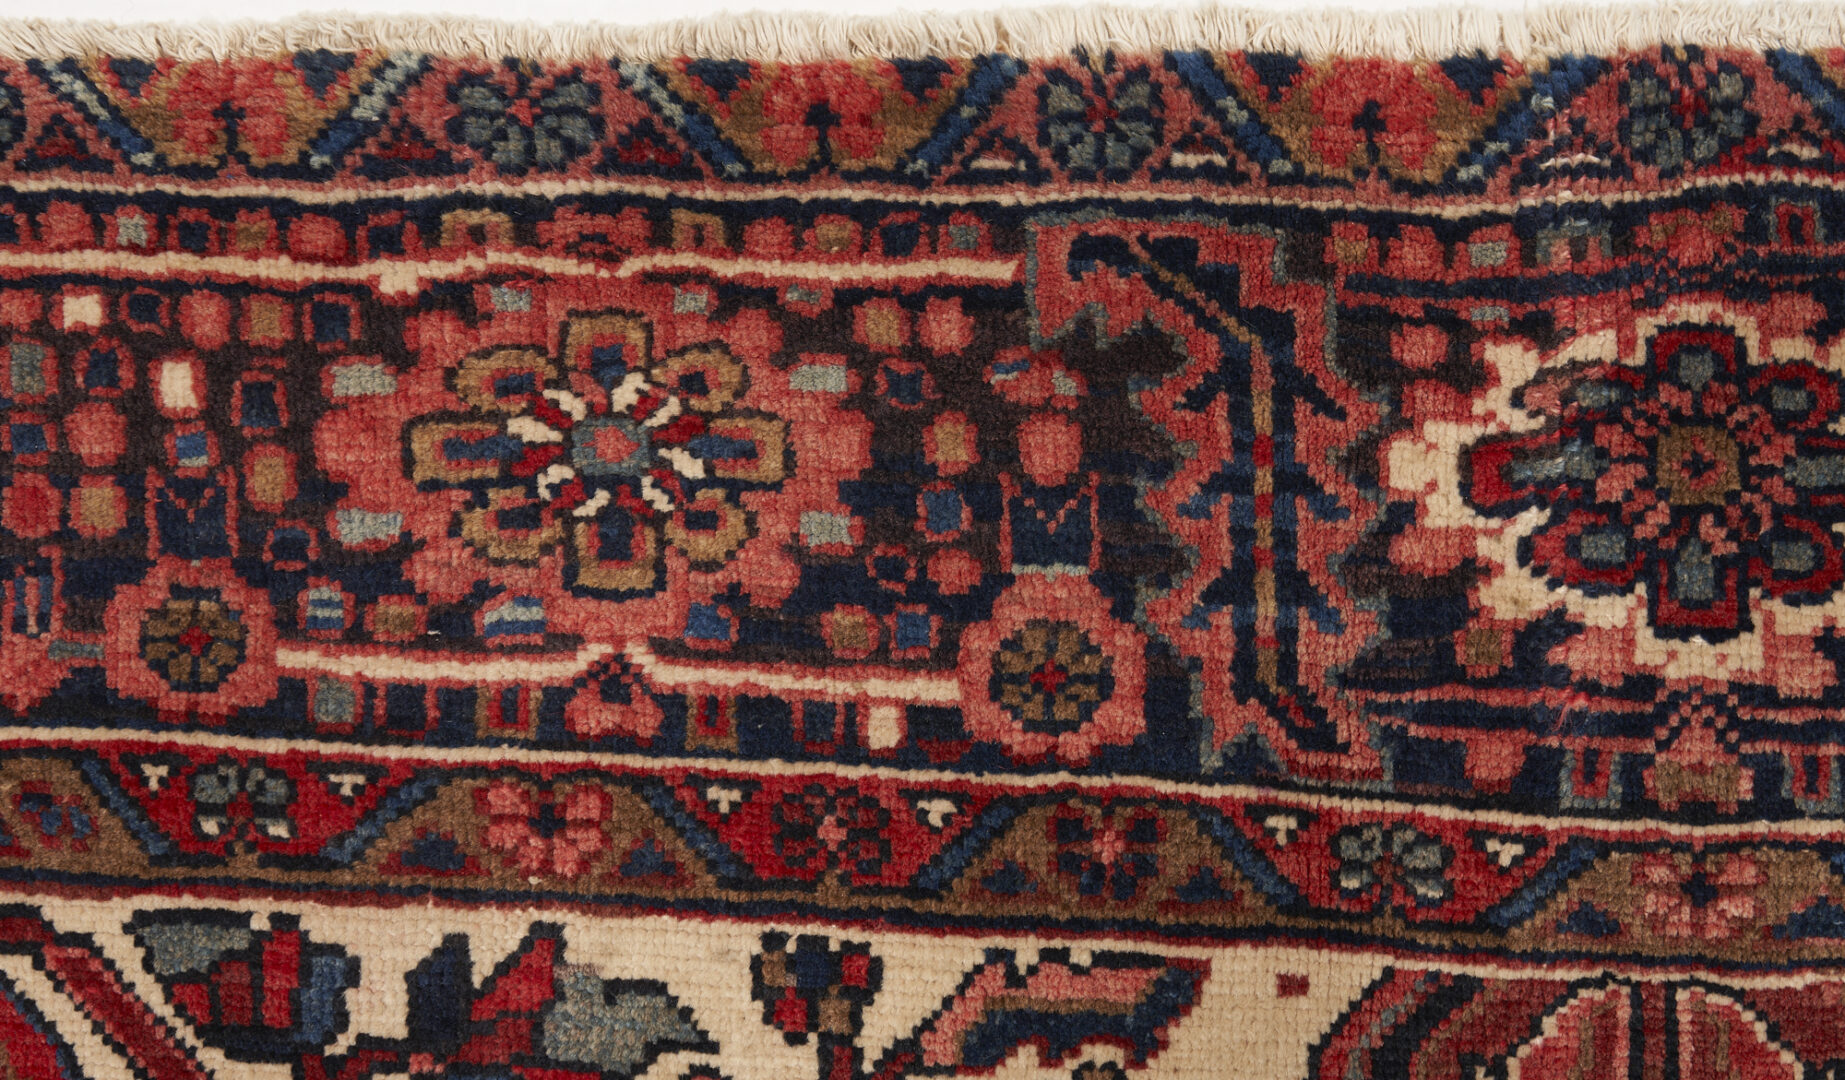 Lot 988: Large Persian Heriz Rug or Carpet